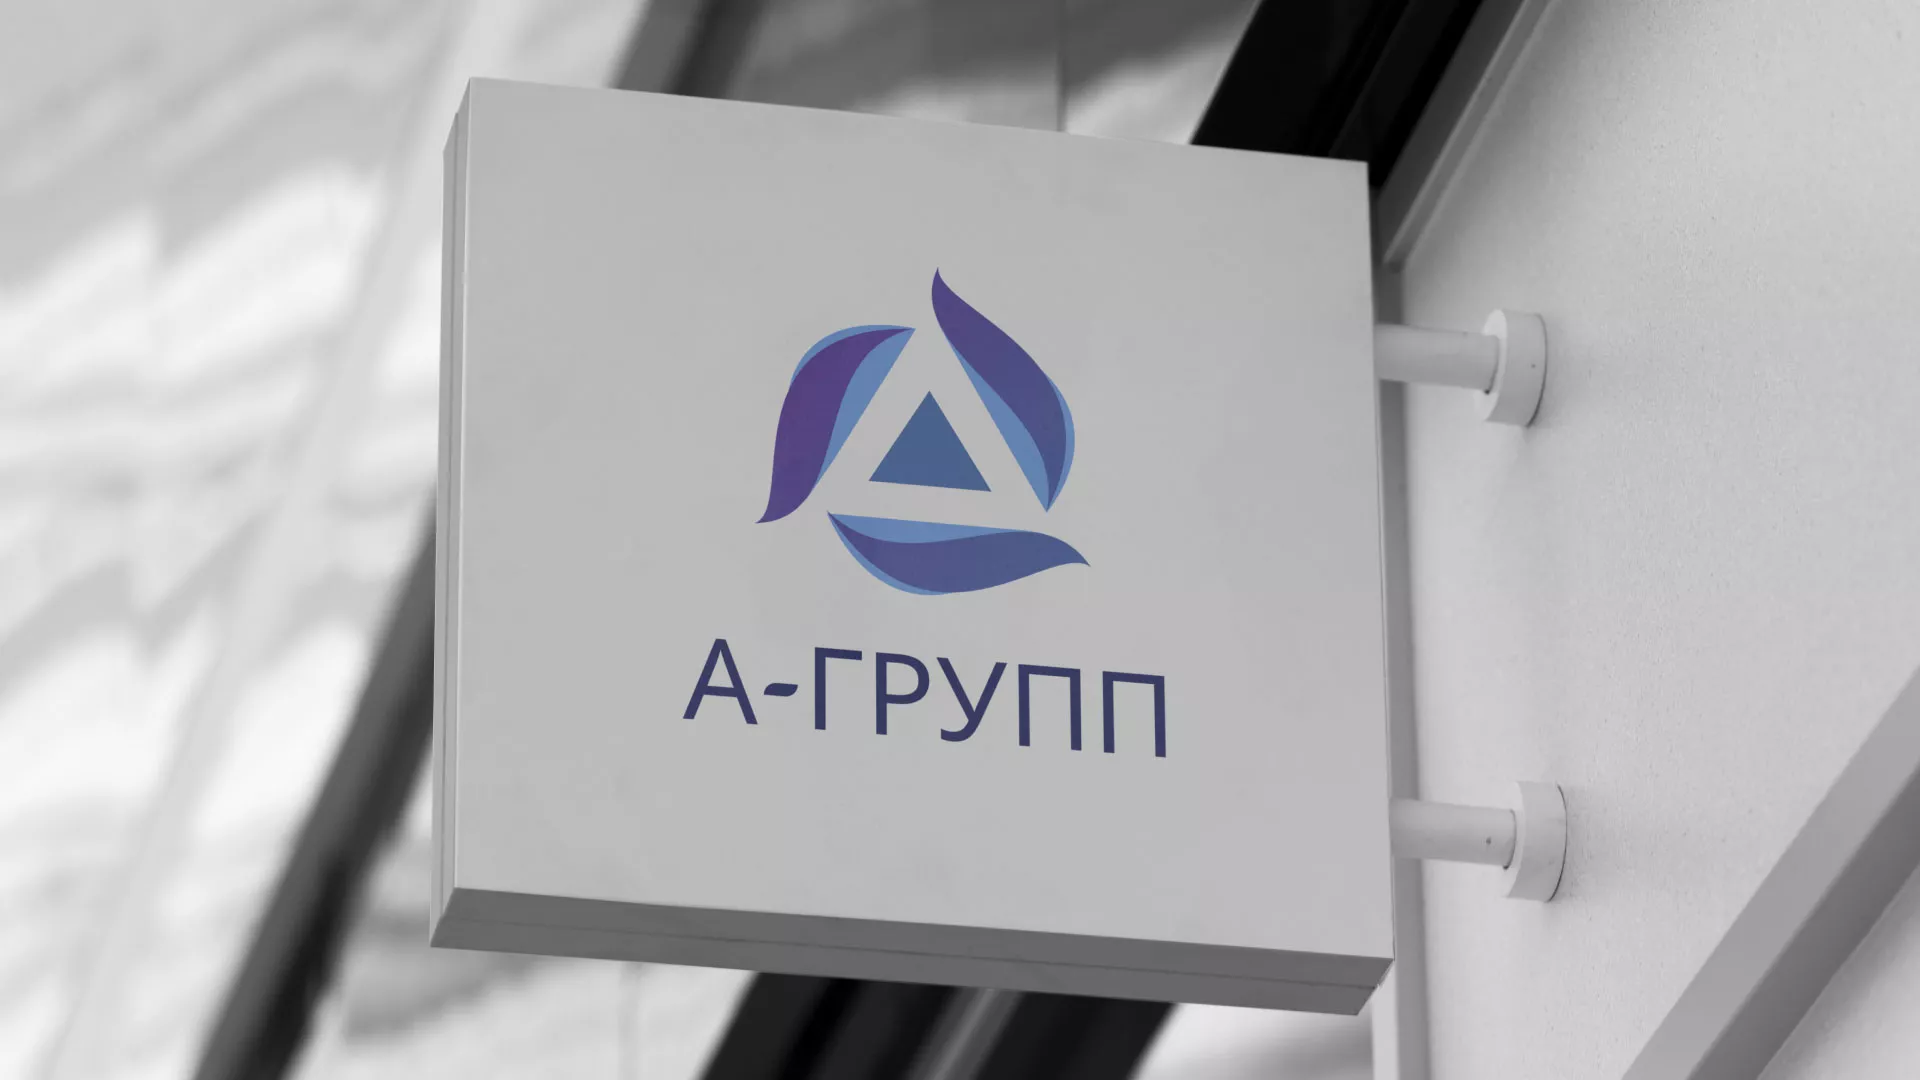 Создание логотипа компании «А-ГРУПП» в Улане-Удэ